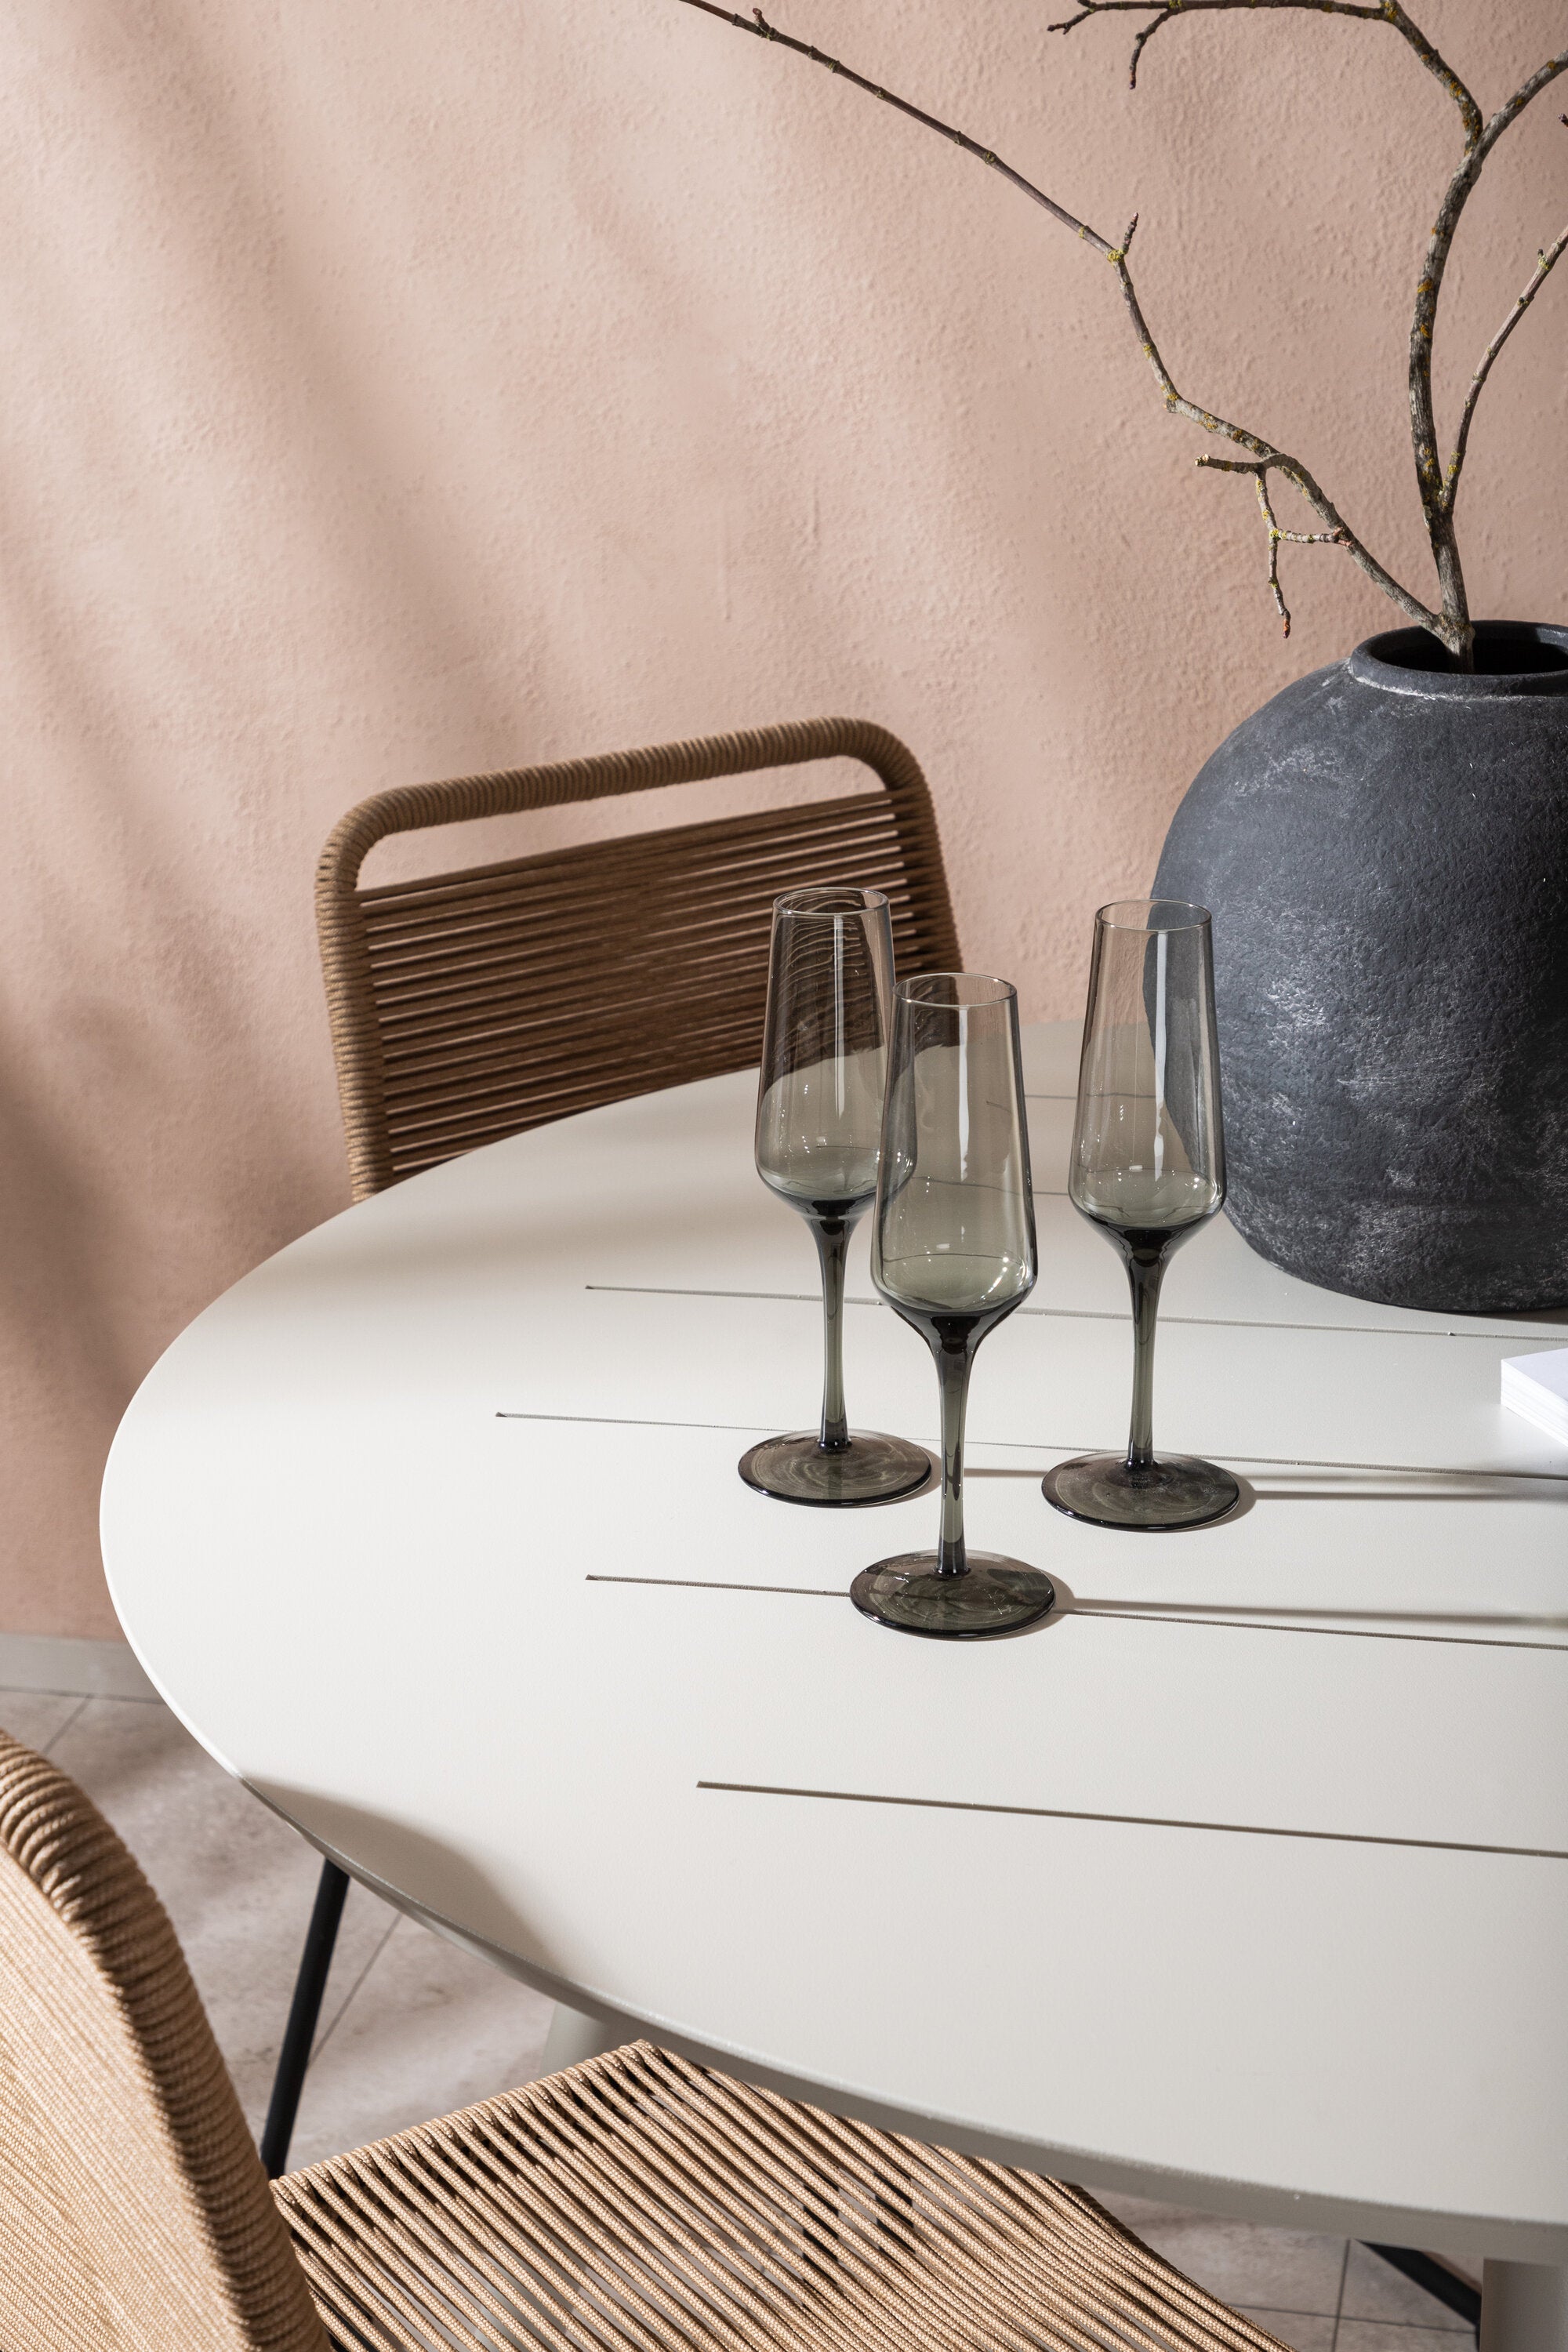 Lina Outdoor-Tischset + Lindos ⌀120cm/4St. in Schwarz Braun präsentiert im Onlineshop von KAQTU Design AG. Gartentischset ist von Venture Home